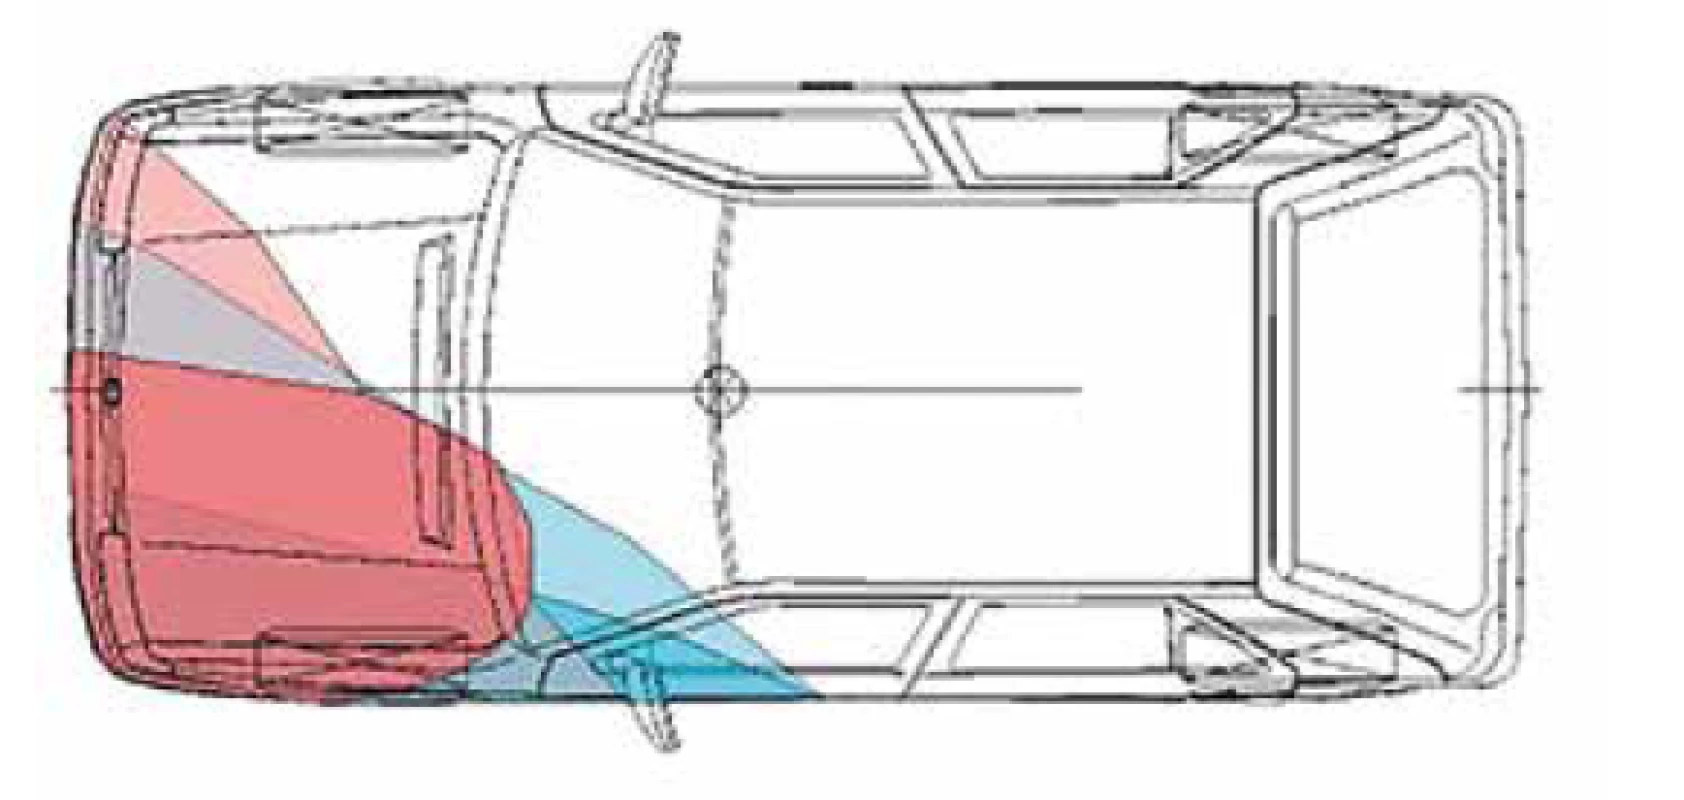 Srovnání hloubky deformací na vozidlech.<br>
Fig. 11. Comparison of vehicles deformation depth.